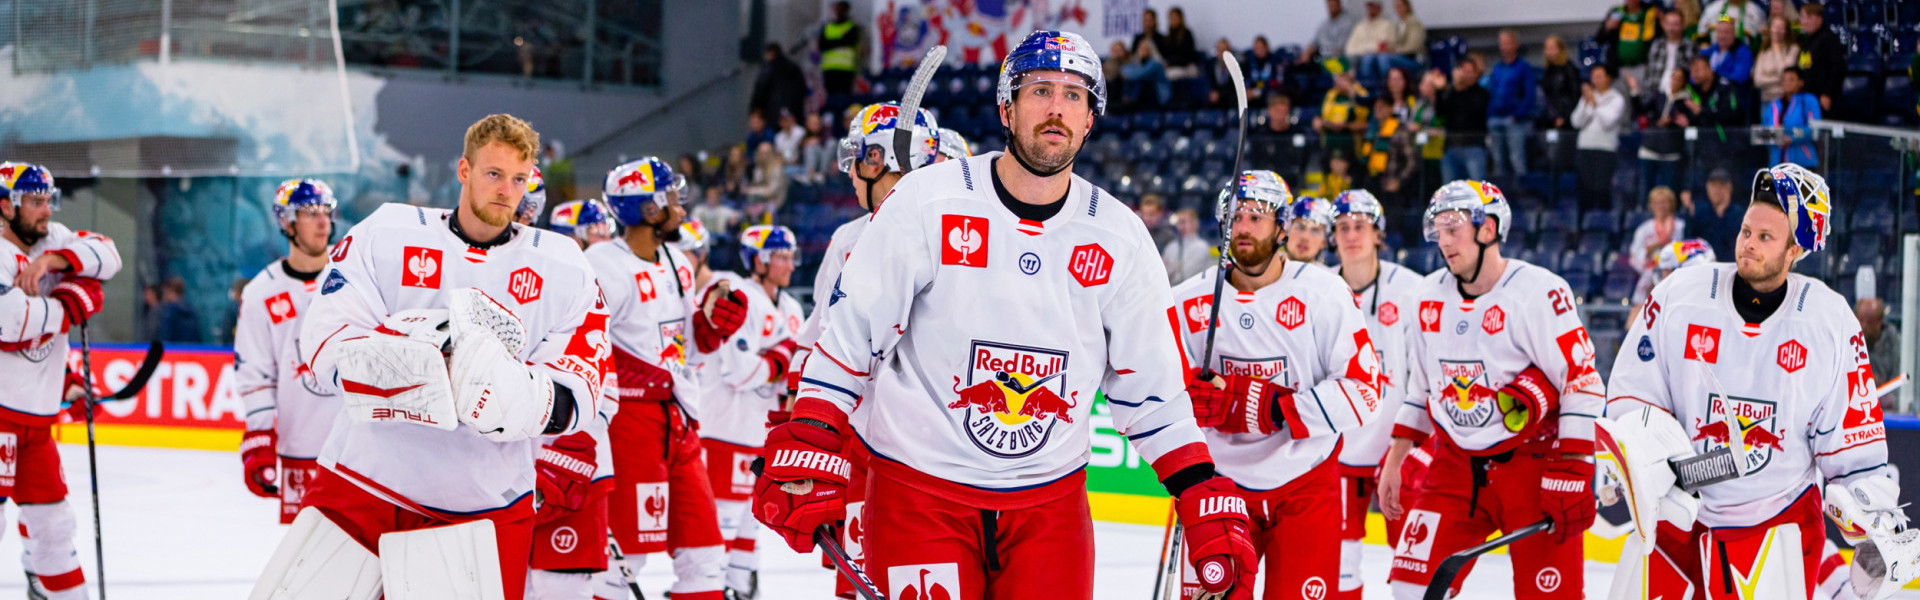 Der EC Salzburg erreichte als einziger der vier ICE-Klubs im Bewerb das Achtelfinale der Champions Hockey League